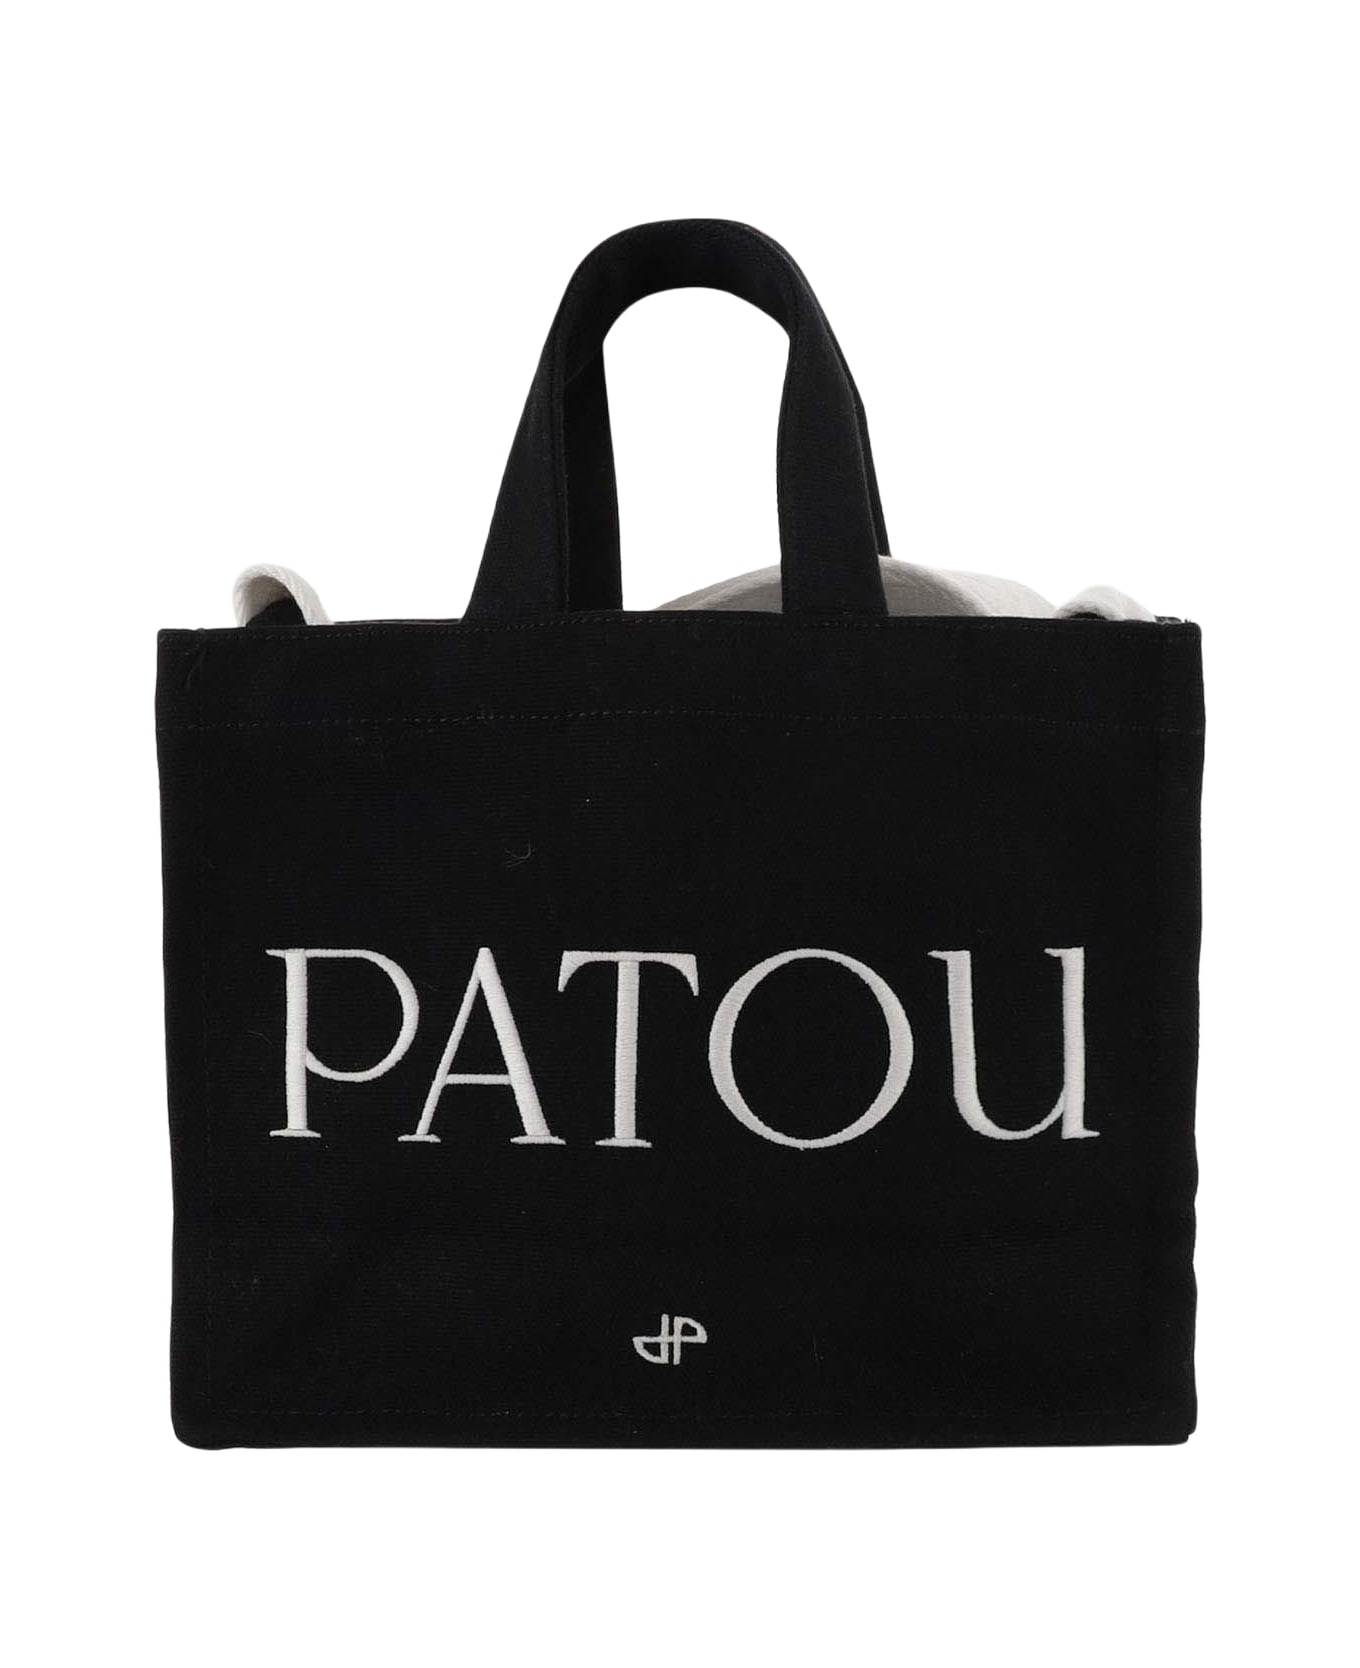 Patou Cotton Tote Bag - Black トートバッグ